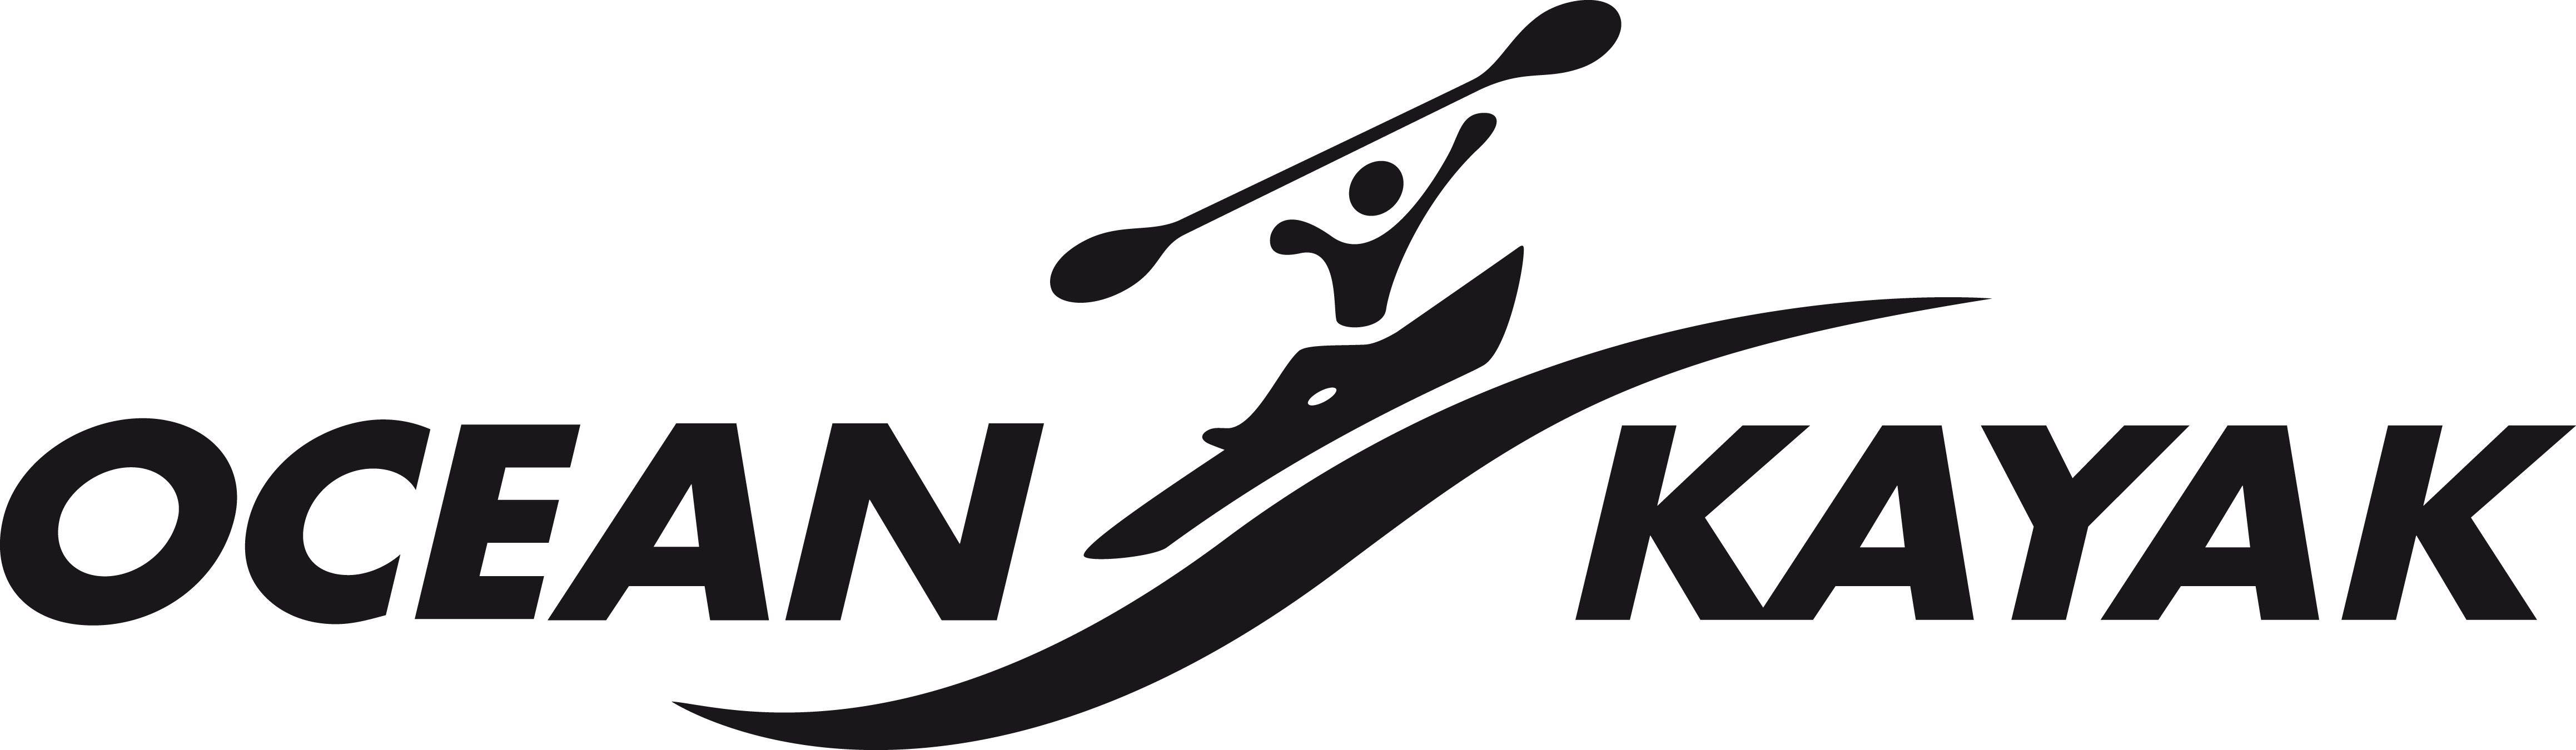 Kayak Logo - Image result for ocean kayak logo | Fishing Logos | Logos, Fish logo ...